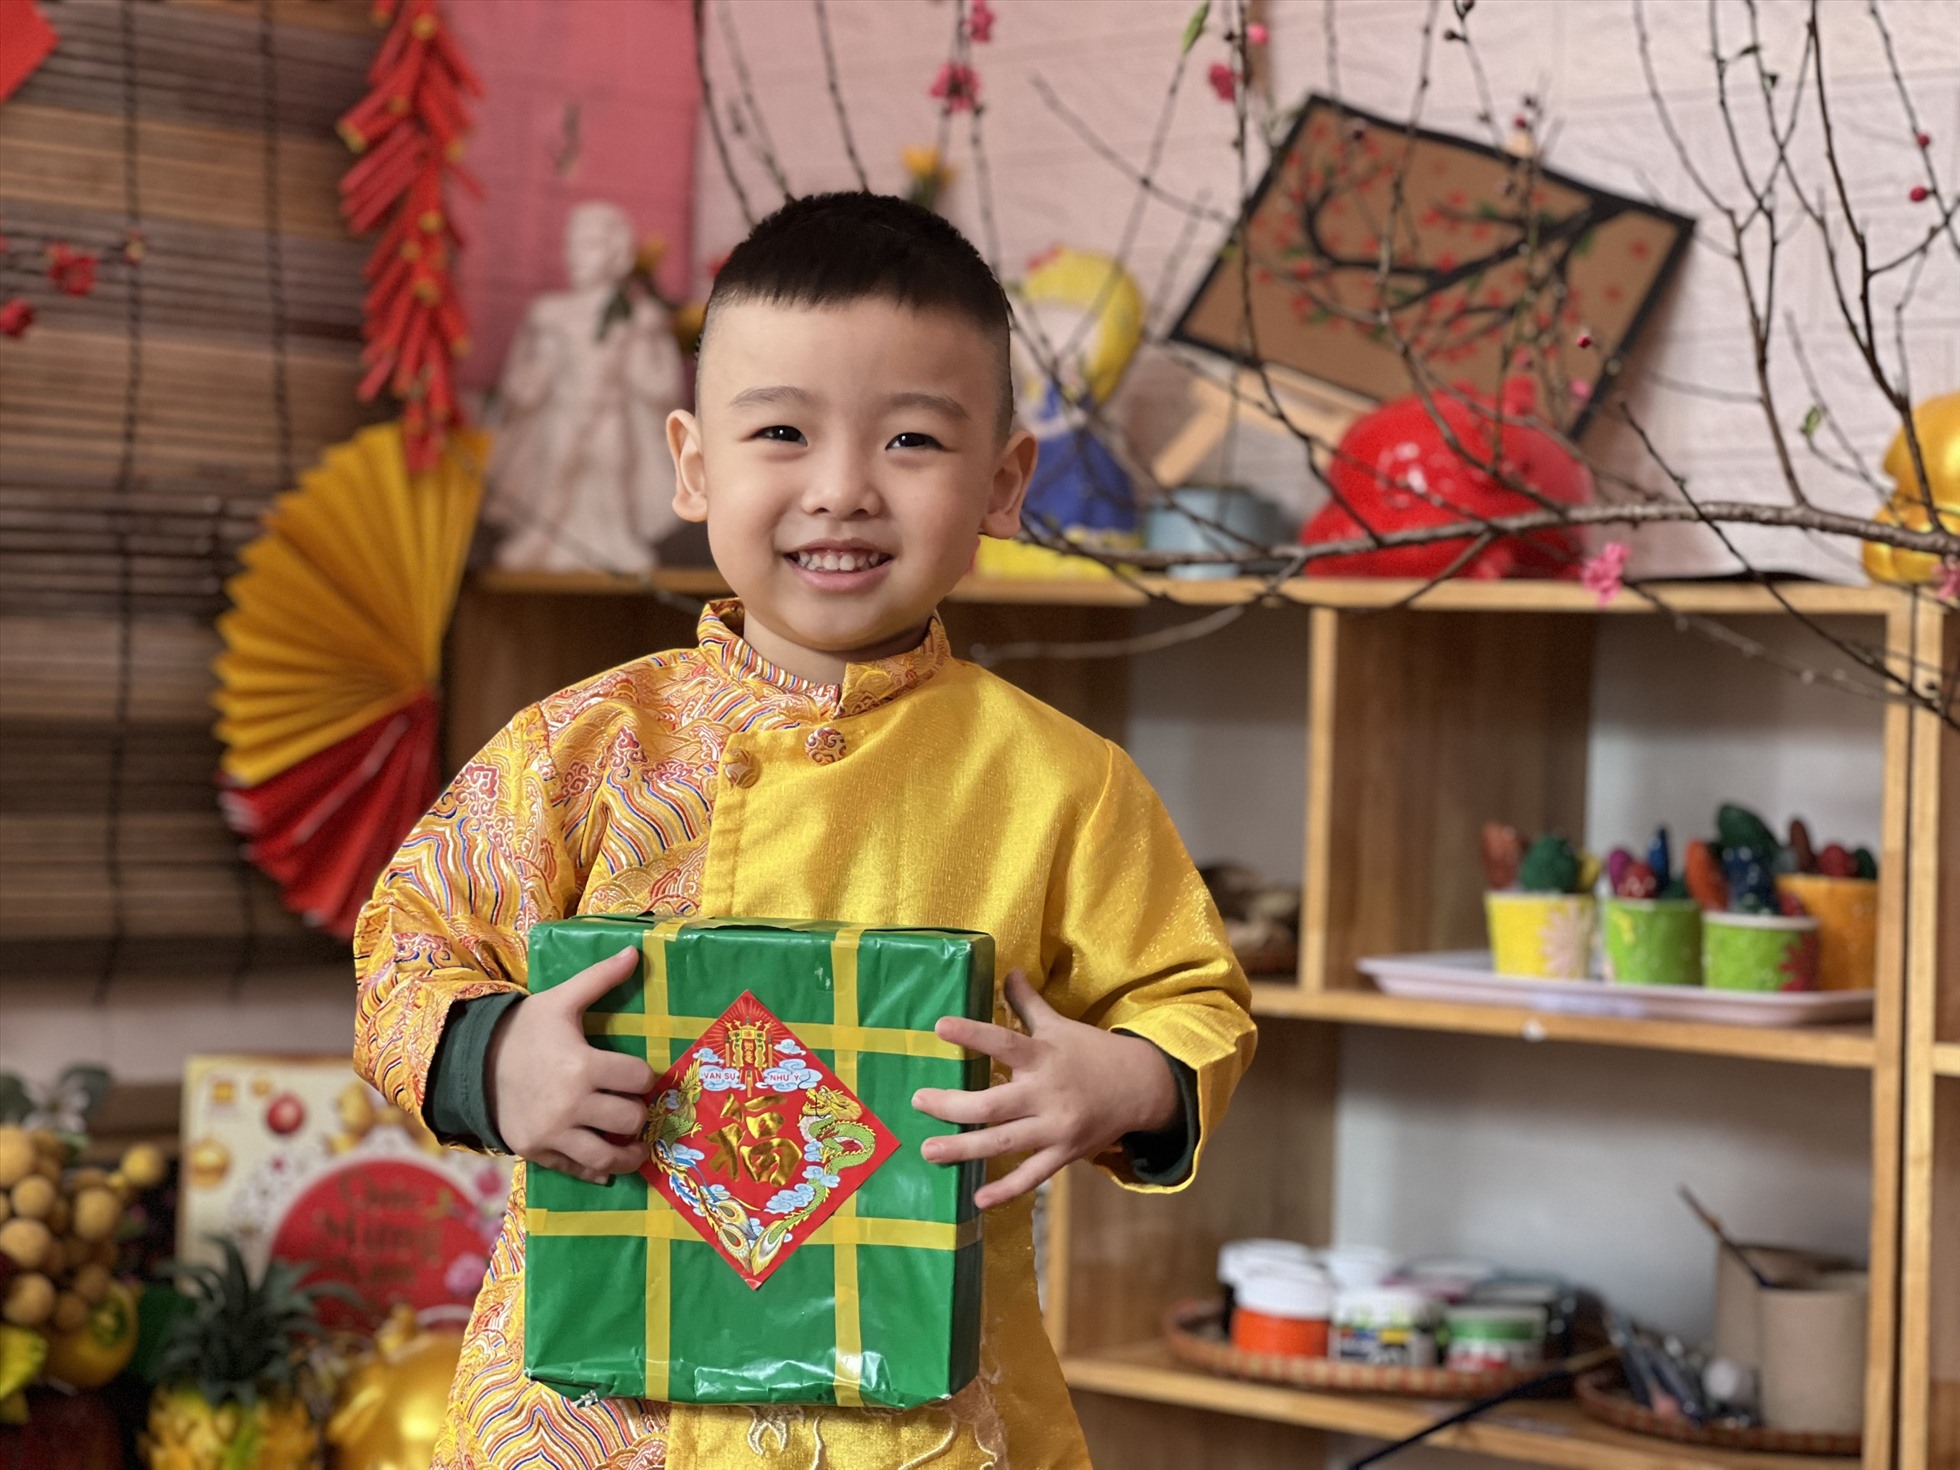 Nhiều hoạt động được các trường tổ chức nhằm giáo dục học sinh yêu Tết cổ truyền - nét đẹp truyền thống văn hoá của người Việt. Ảnh: phụ huynh cung cấp